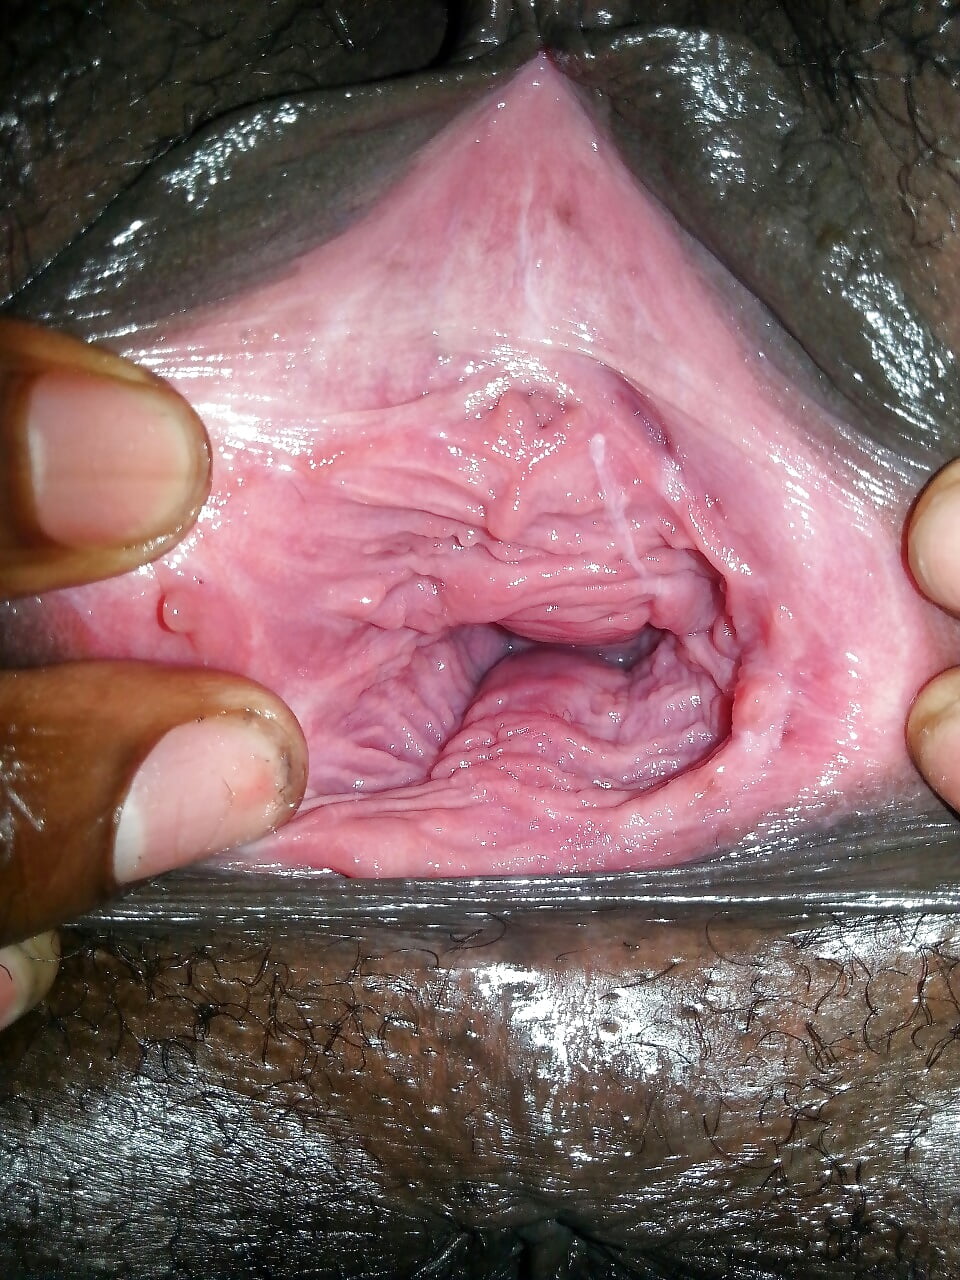 Gerbil inside vagina